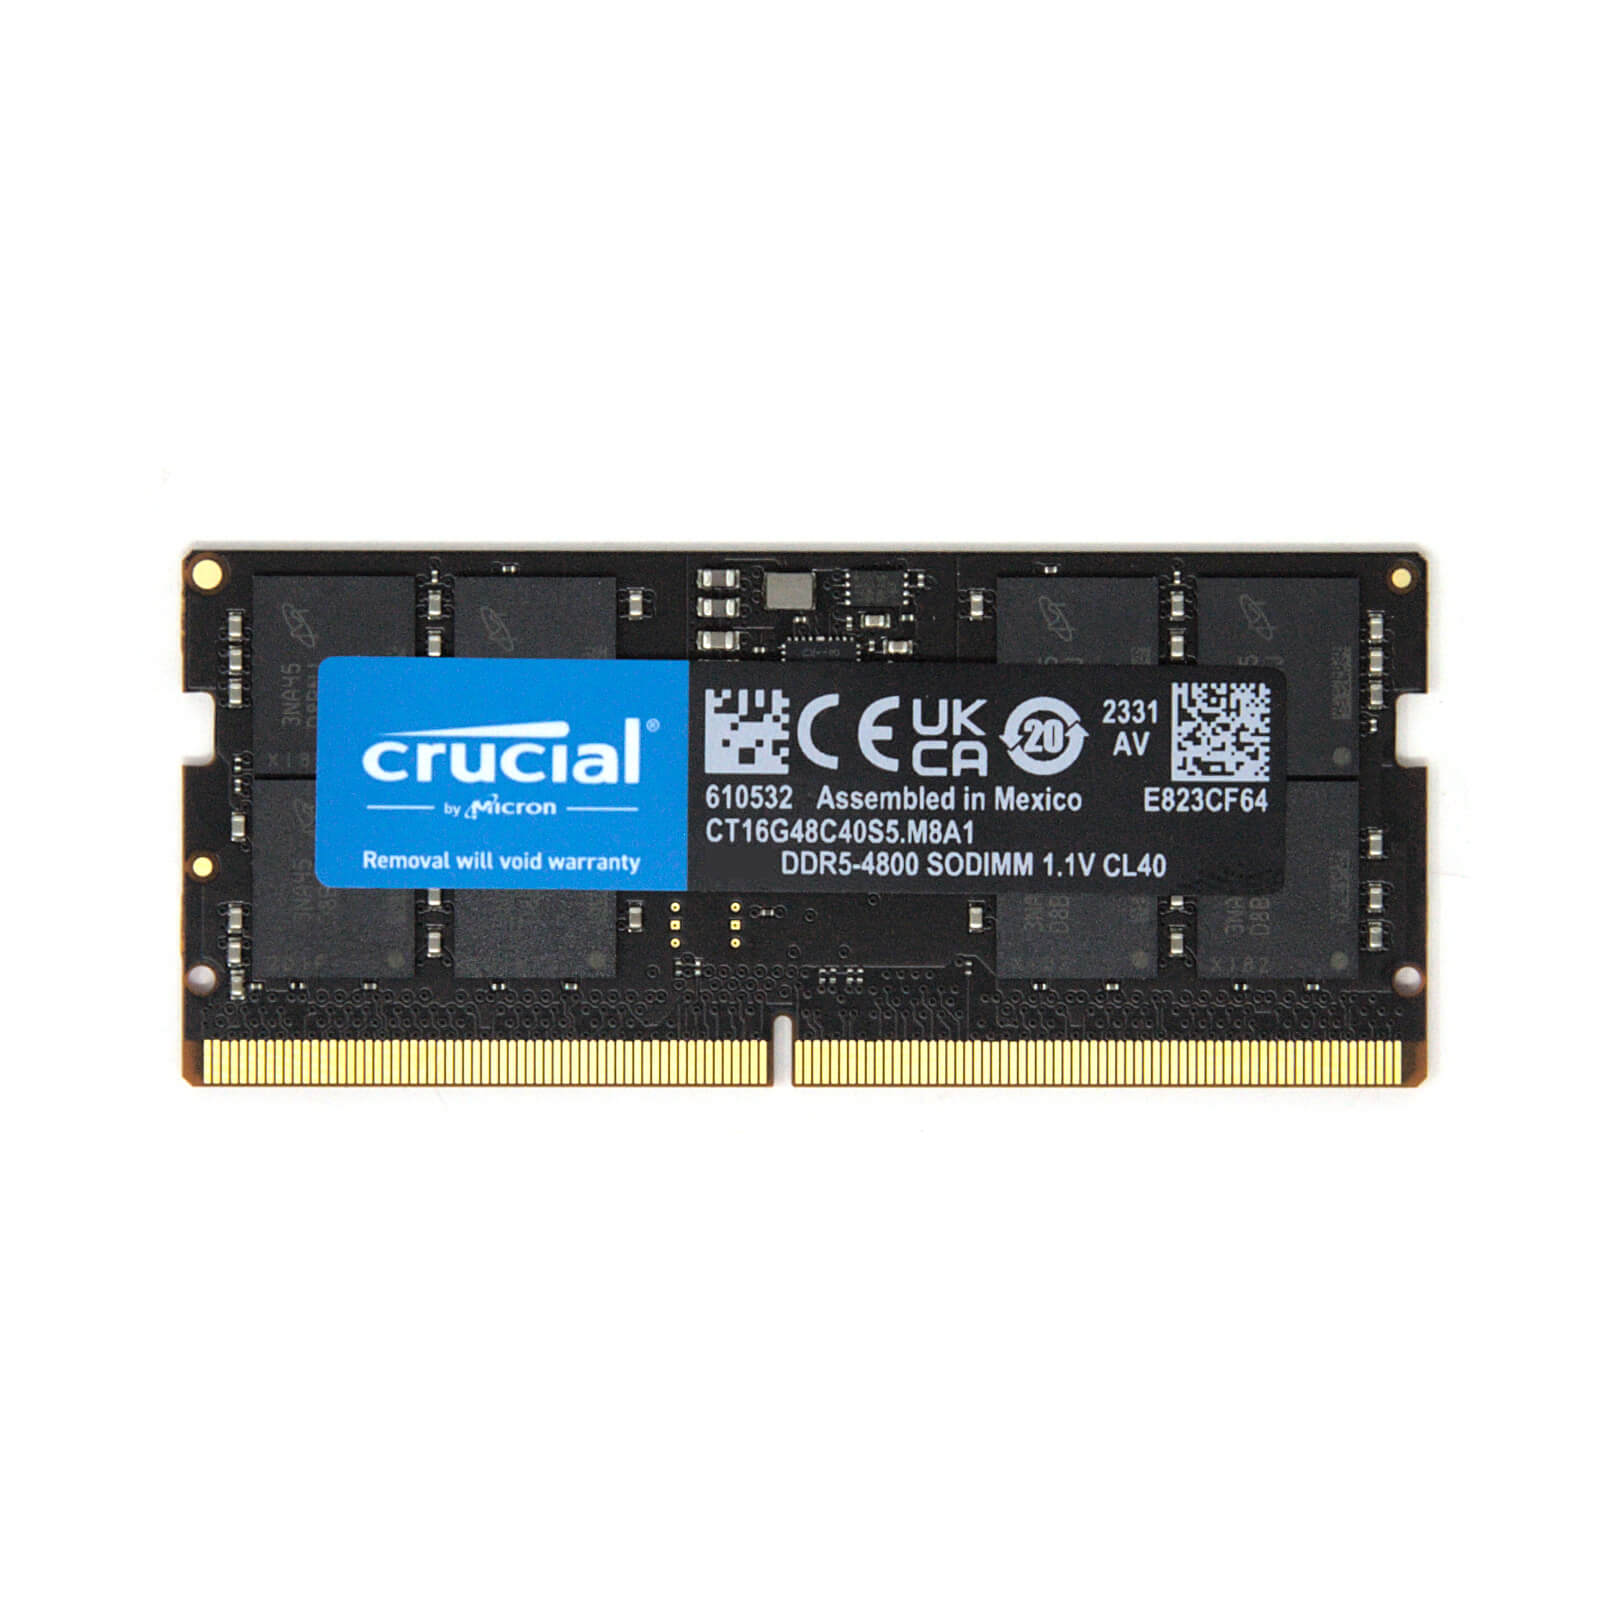 Crucial DDR5-4800 SO-DIMM Memory Module - 8GB